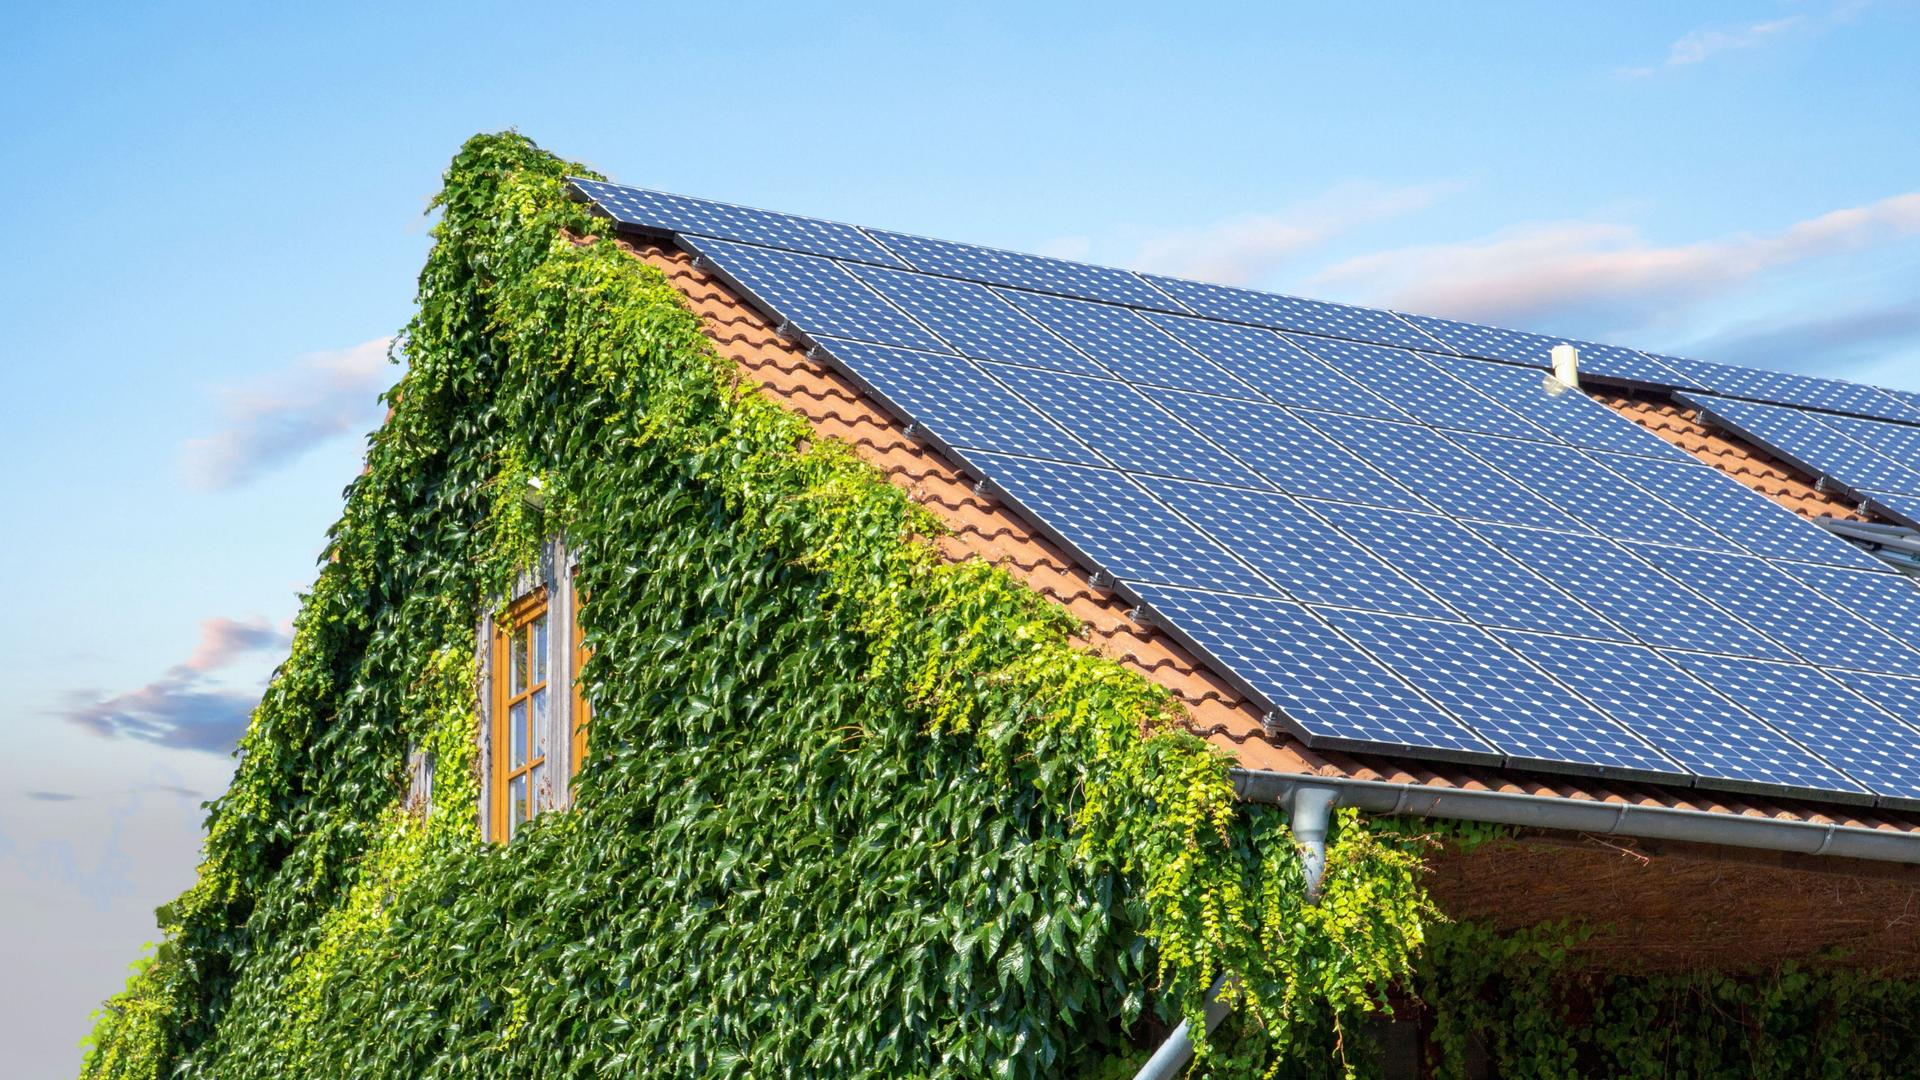 Dach eines Hauses mit Solarpanelen und mit Pflanzen bewachsenem Giebel.